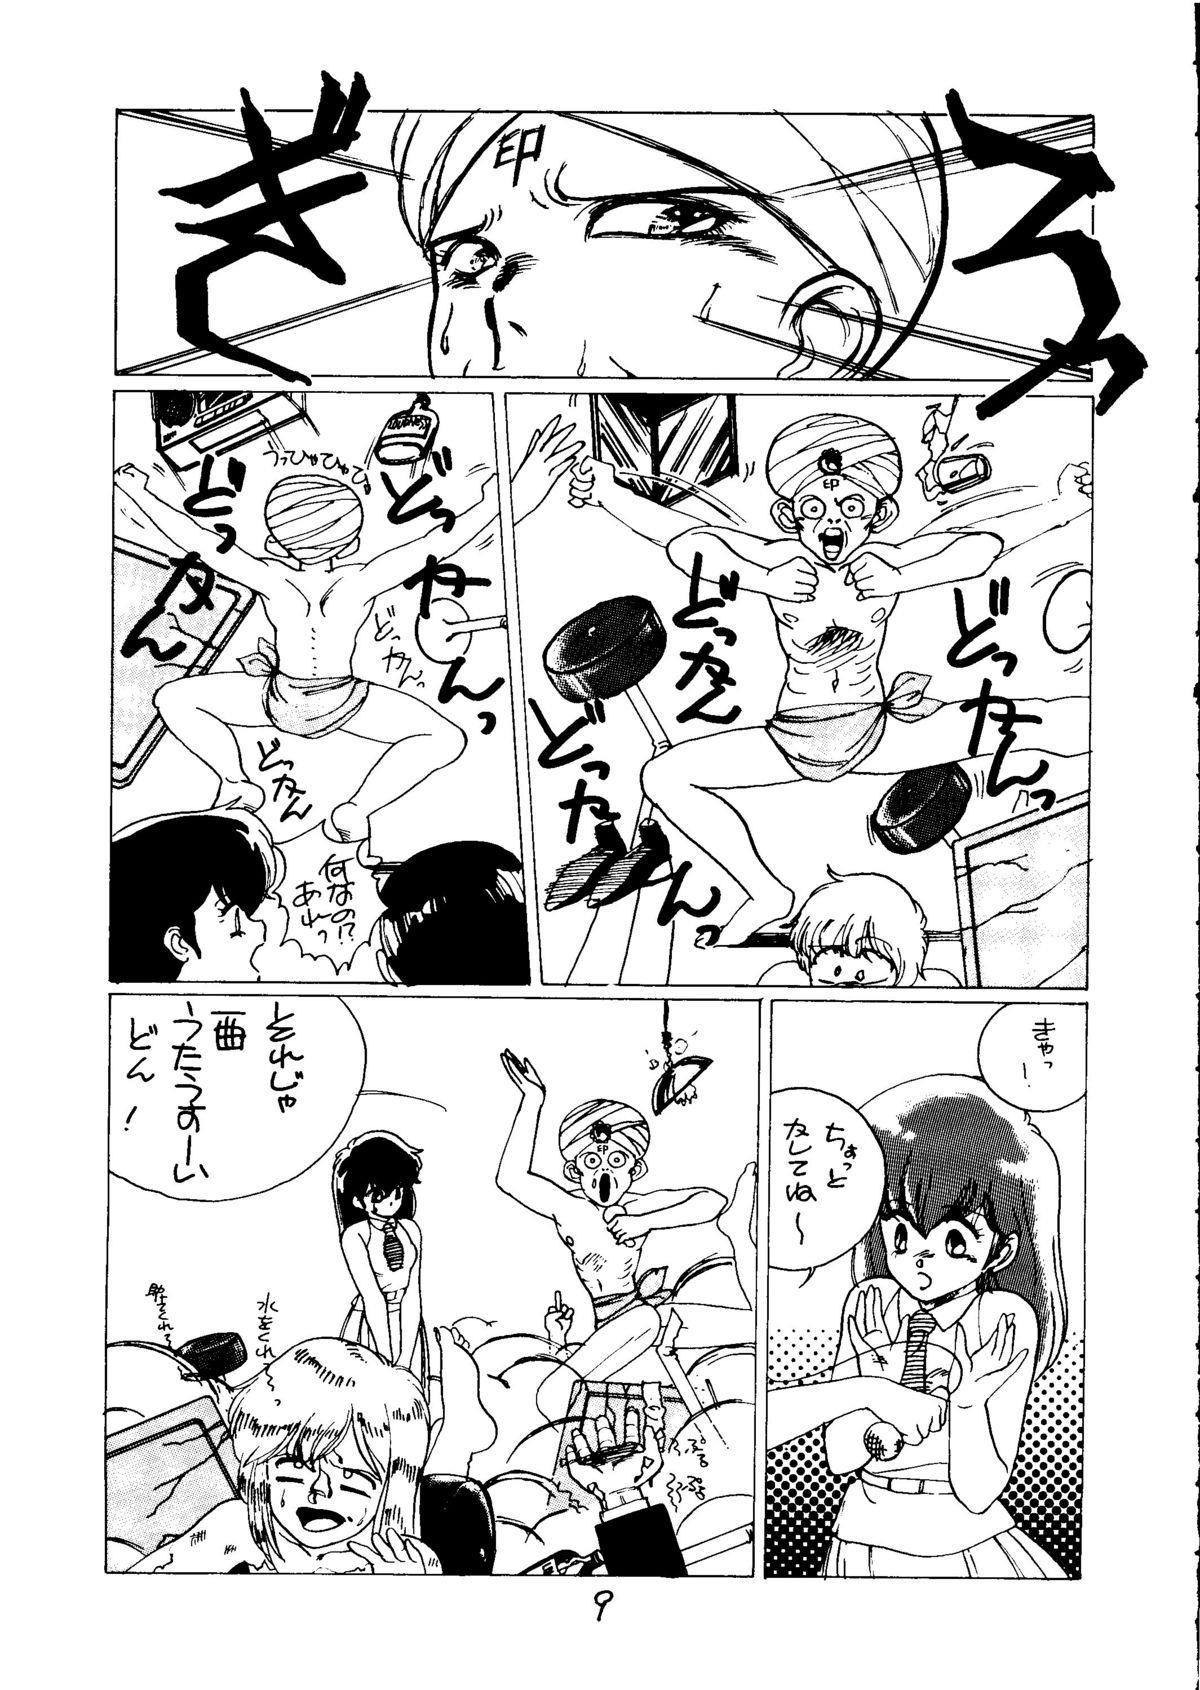 Culo Grande Tororoimo Vol. 5 - Urusei yatsura Dirty pair Fist of the north star Gay Pawn - Page 8